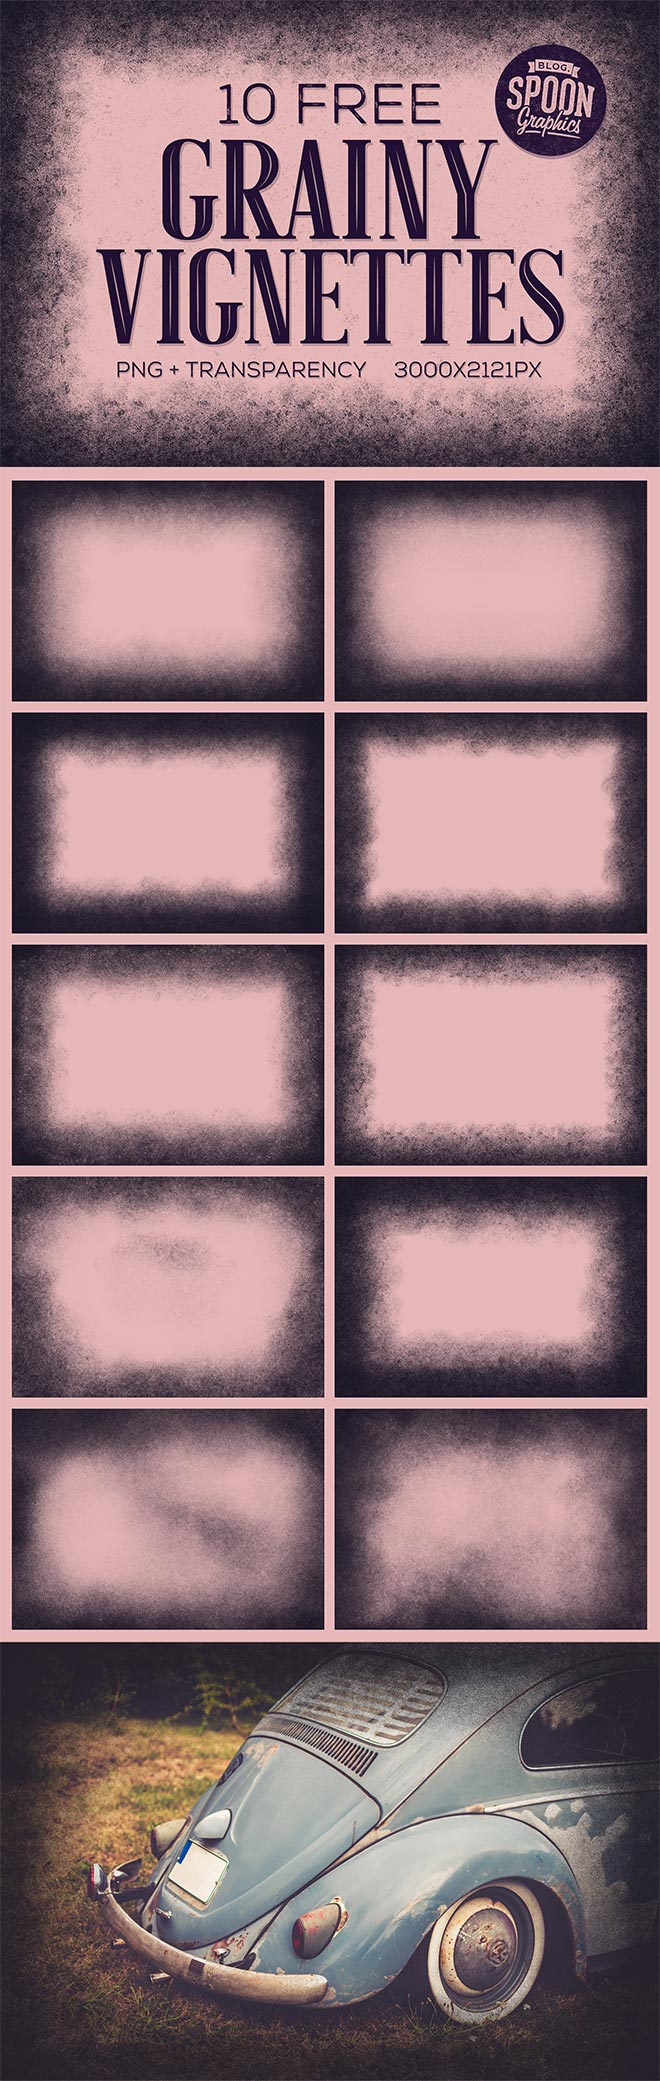 10个晕影效果PNG透明纹理图片 10 Free Grainy Vignette Textures with PNG Transparency